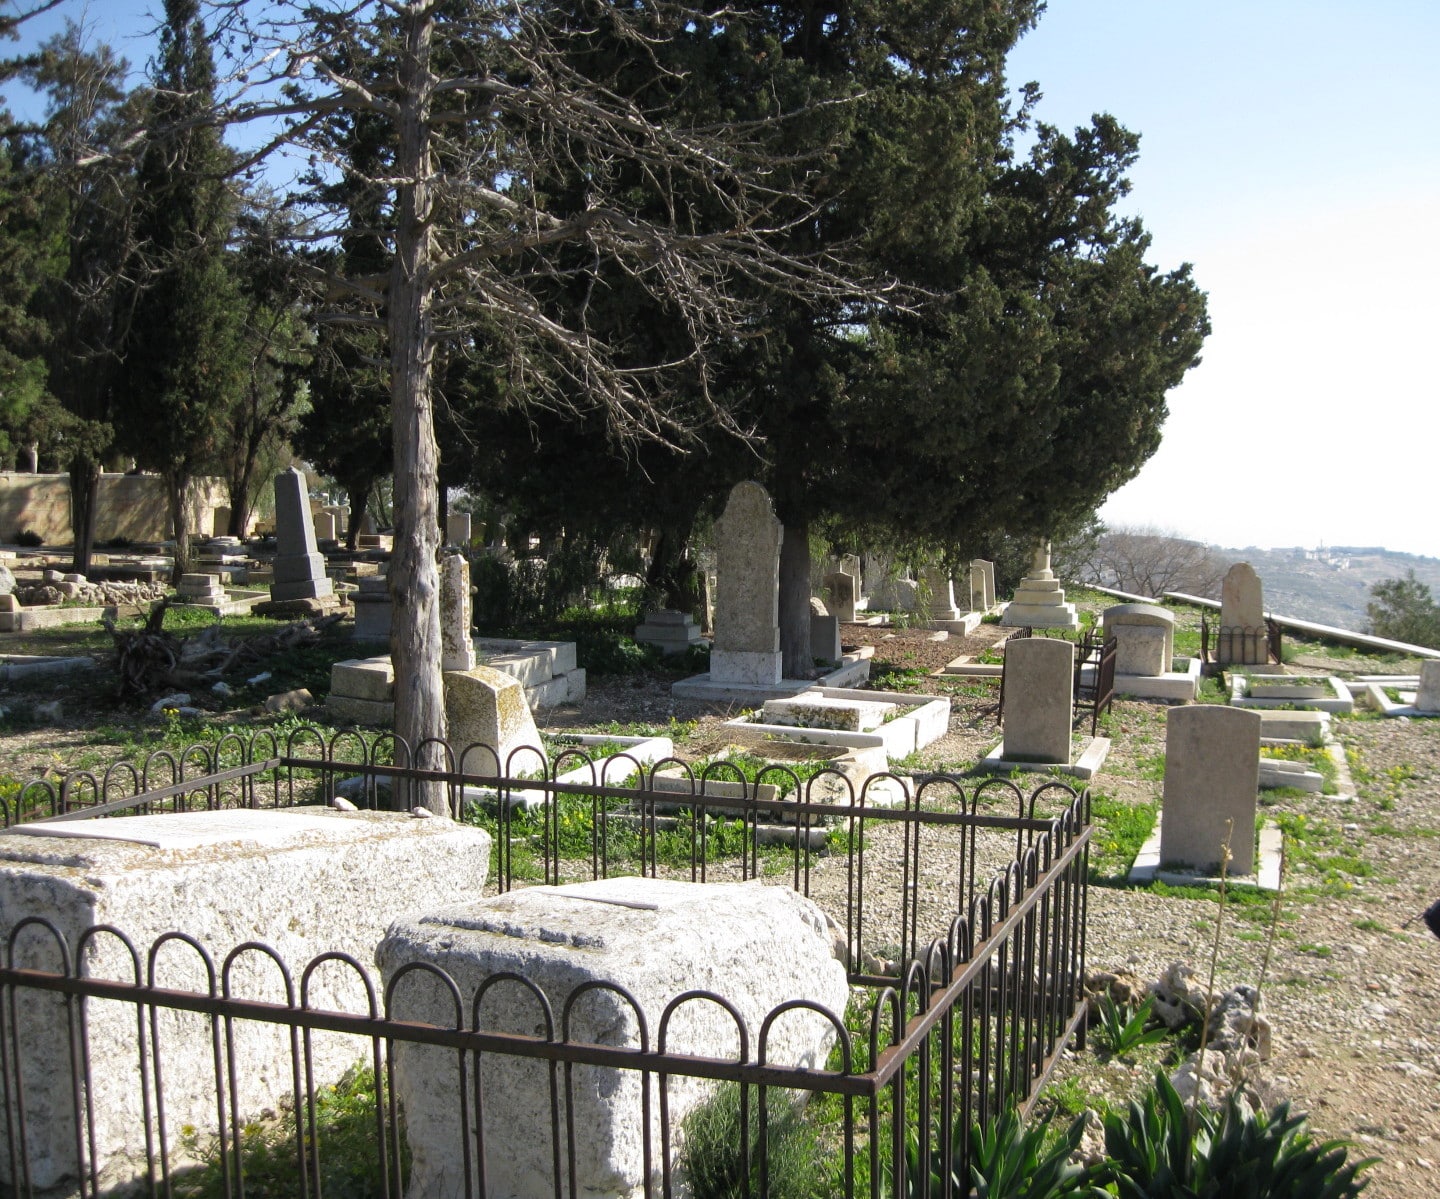 בית הקברות הנוצרי פרוטסטנטי